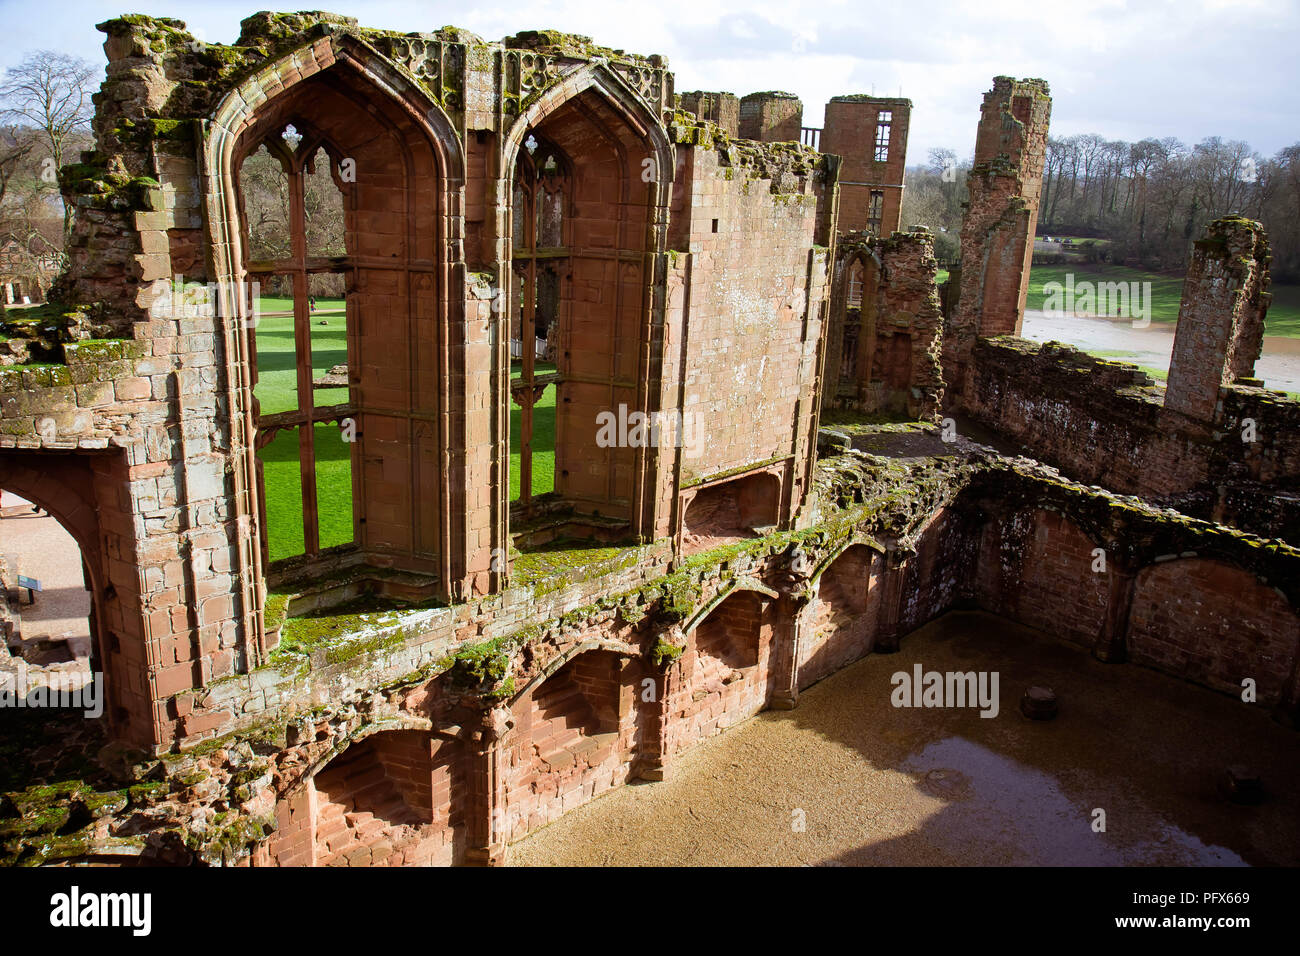 Febrero 2016 - ruinas de El Castillo de Kenilworth, UK; desempeñó un importante papel histórico y fue el tema del asedio más largo de la historia inglesa Foto de stock